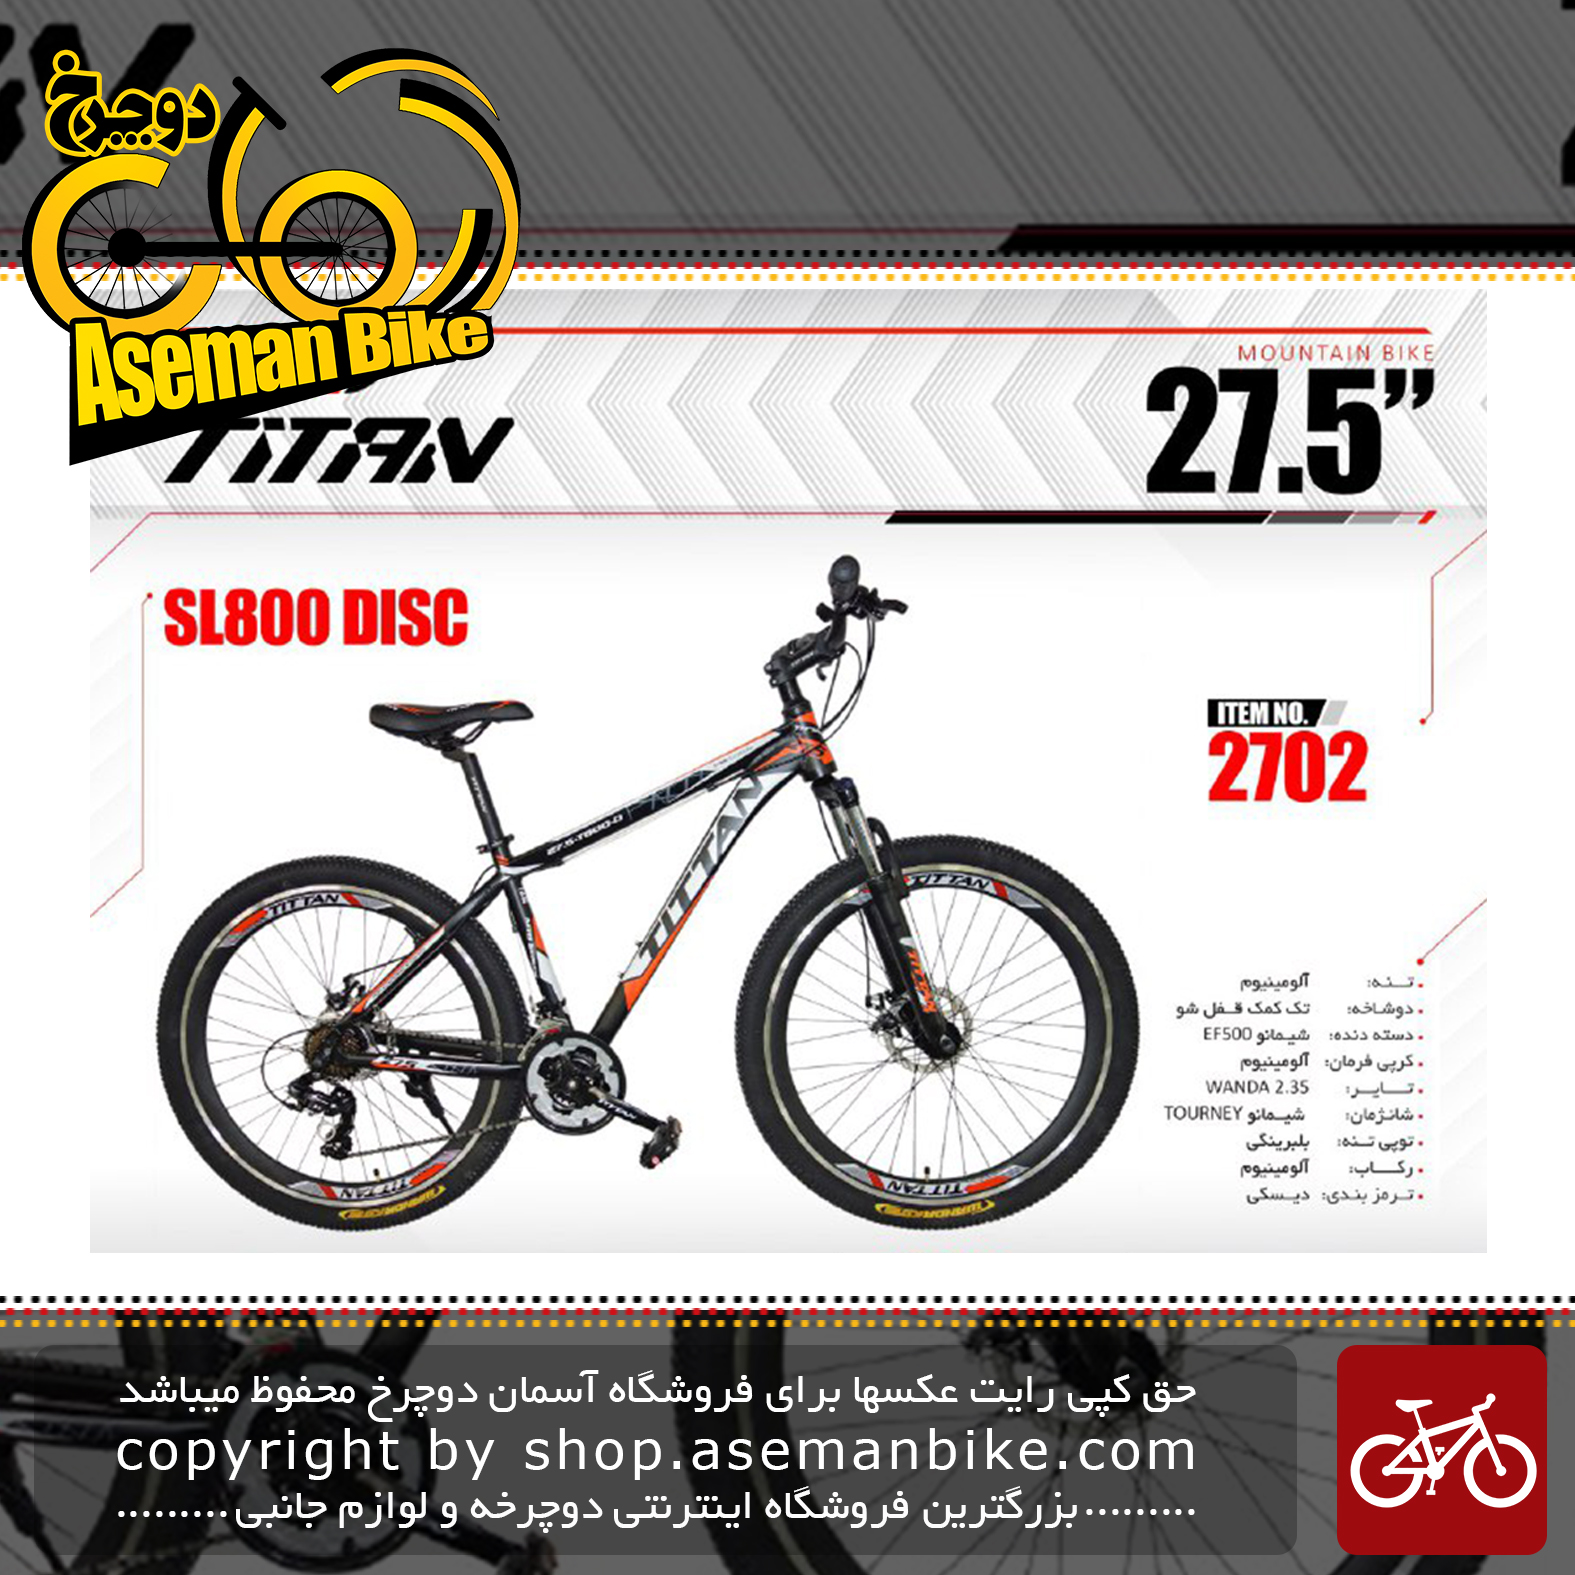 دوچرخه کوهستان و شهری تایتان سایز 27.5 دیسکی مدل اس ال 800 TITAN Bicycle SIZE 27.5 SL800 DISC